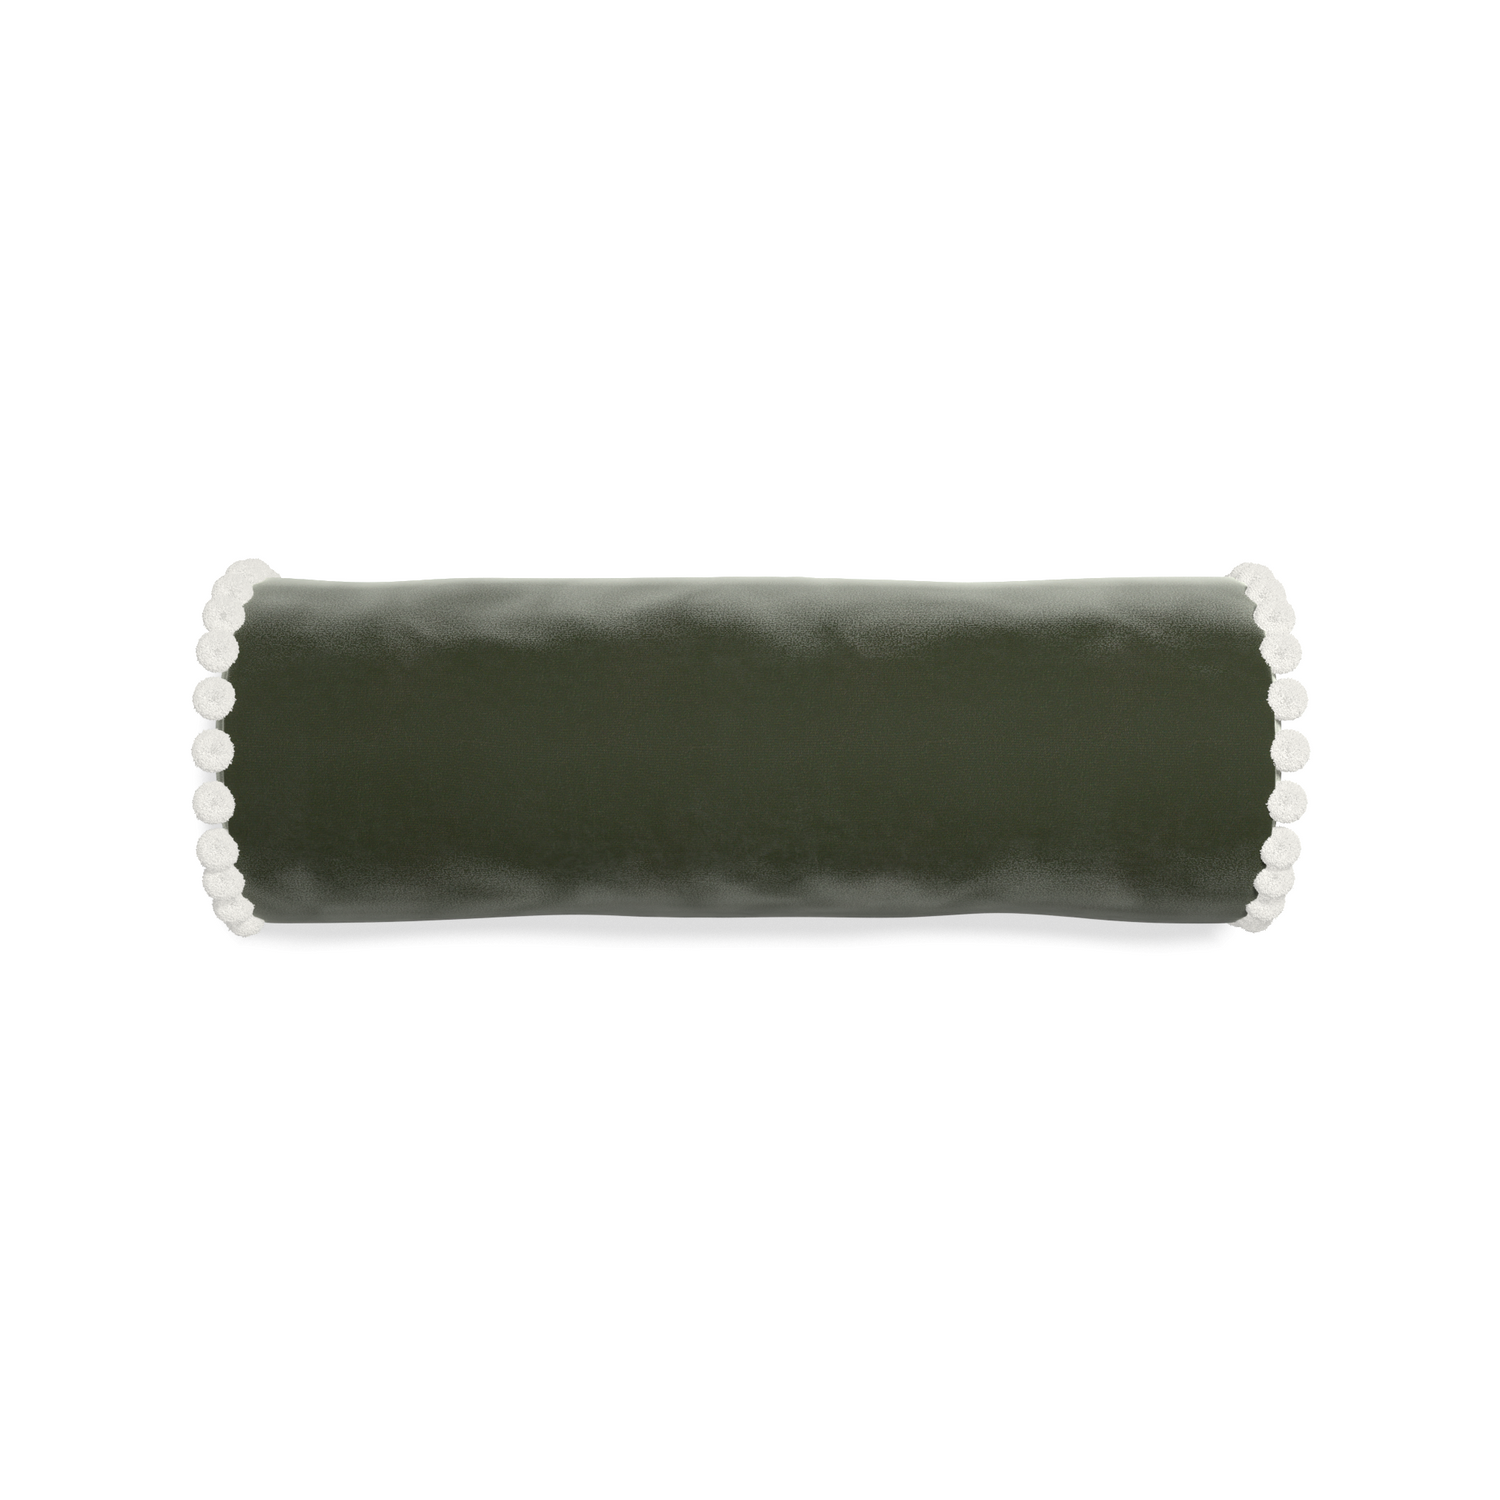 bolster fern green velvet pillow with white pom poms